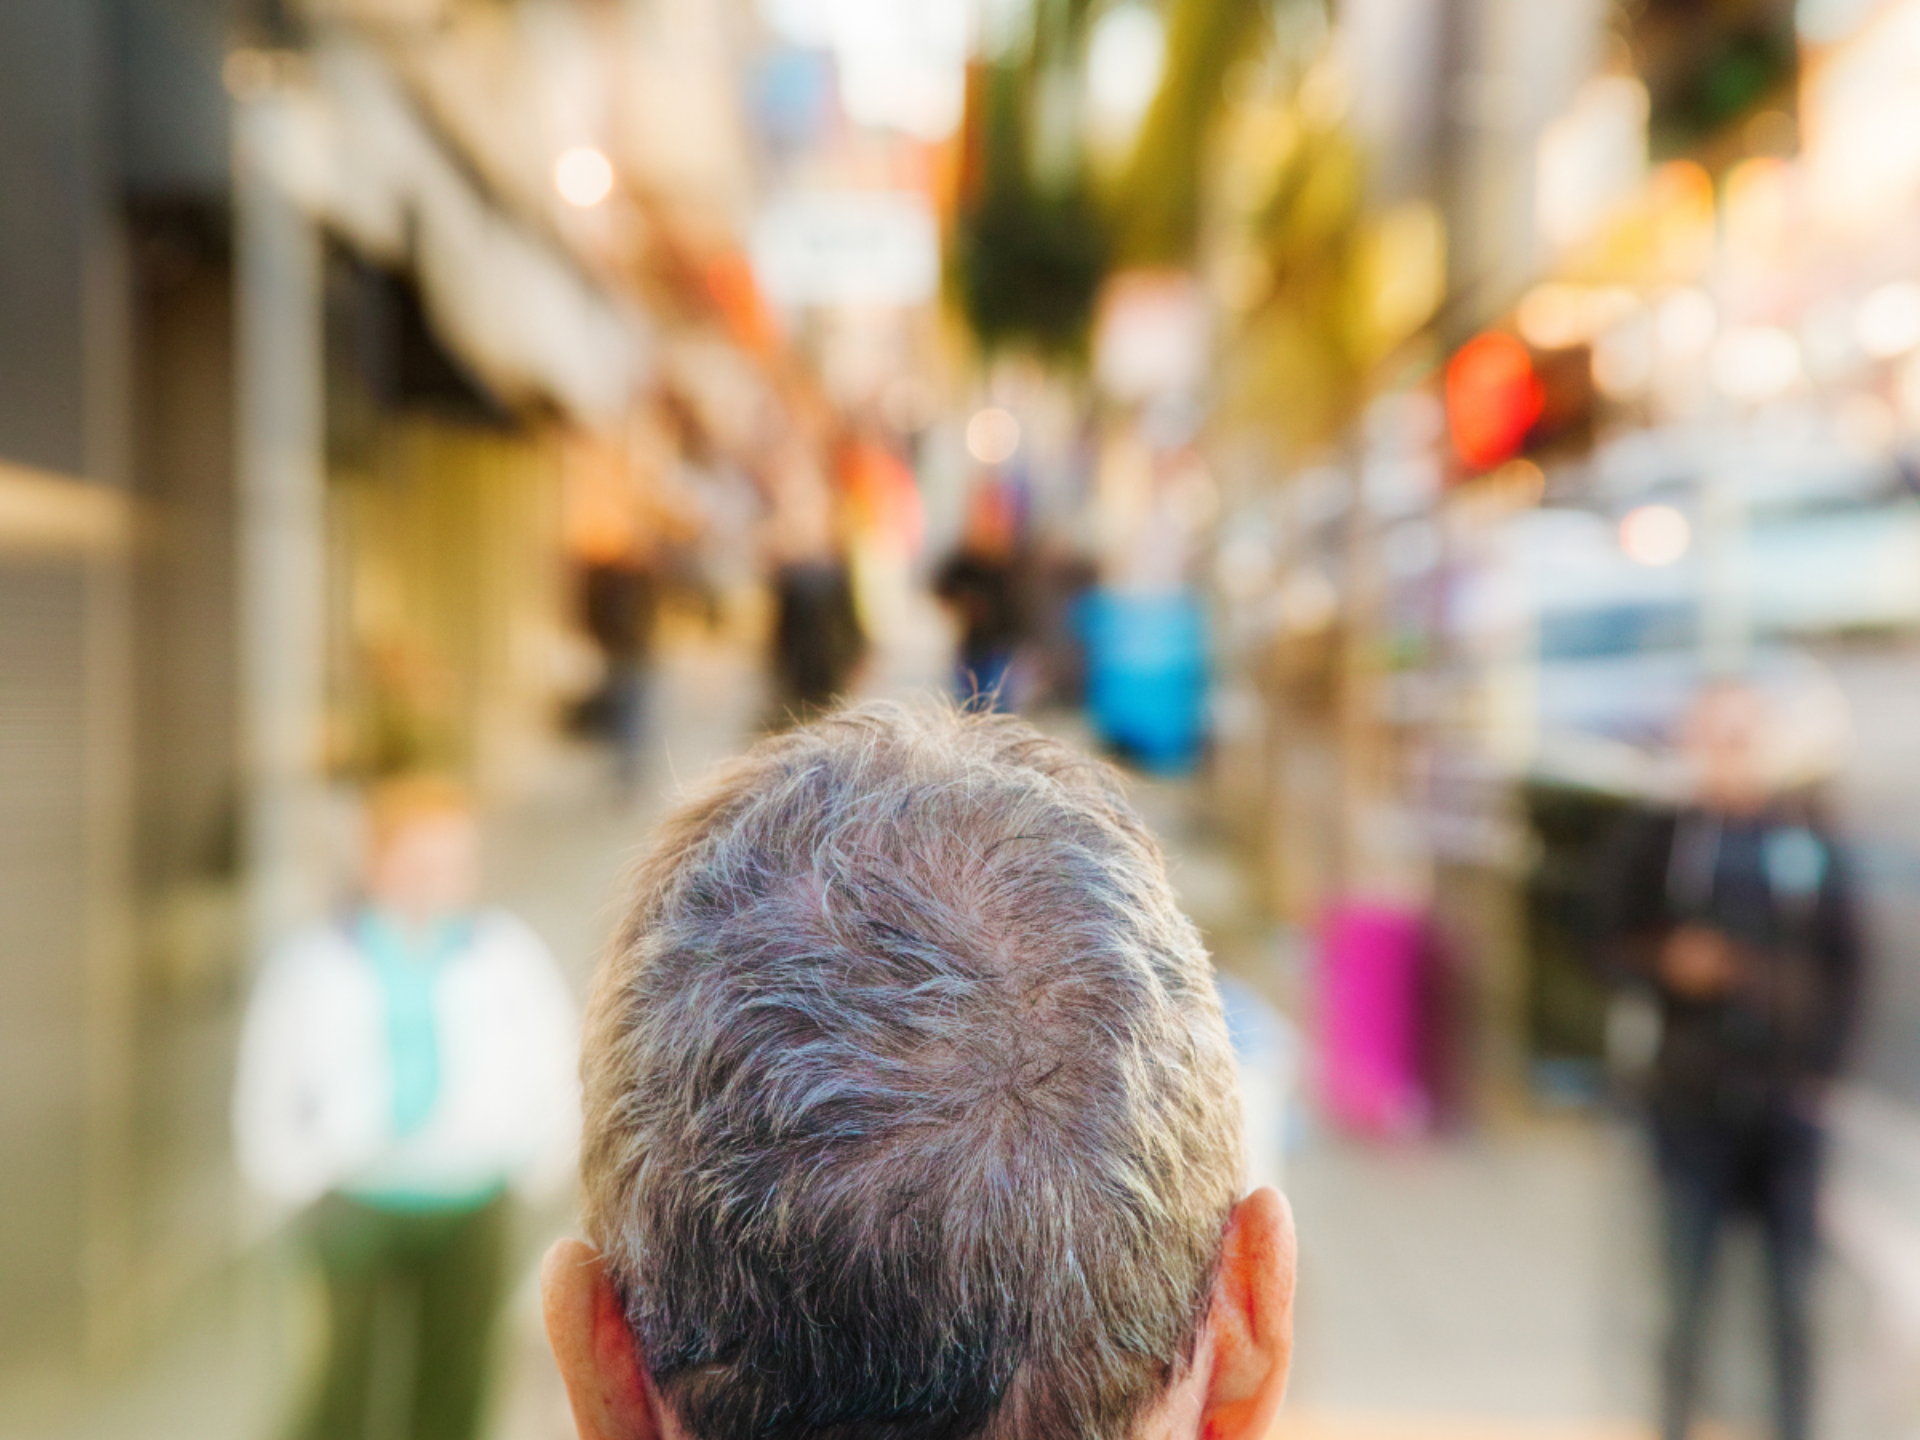 Man met kort grijs haar loopt in een drukke winkelstraat. De achtergrond is wazig omdat hij duizelig wordt van alle prikkels.